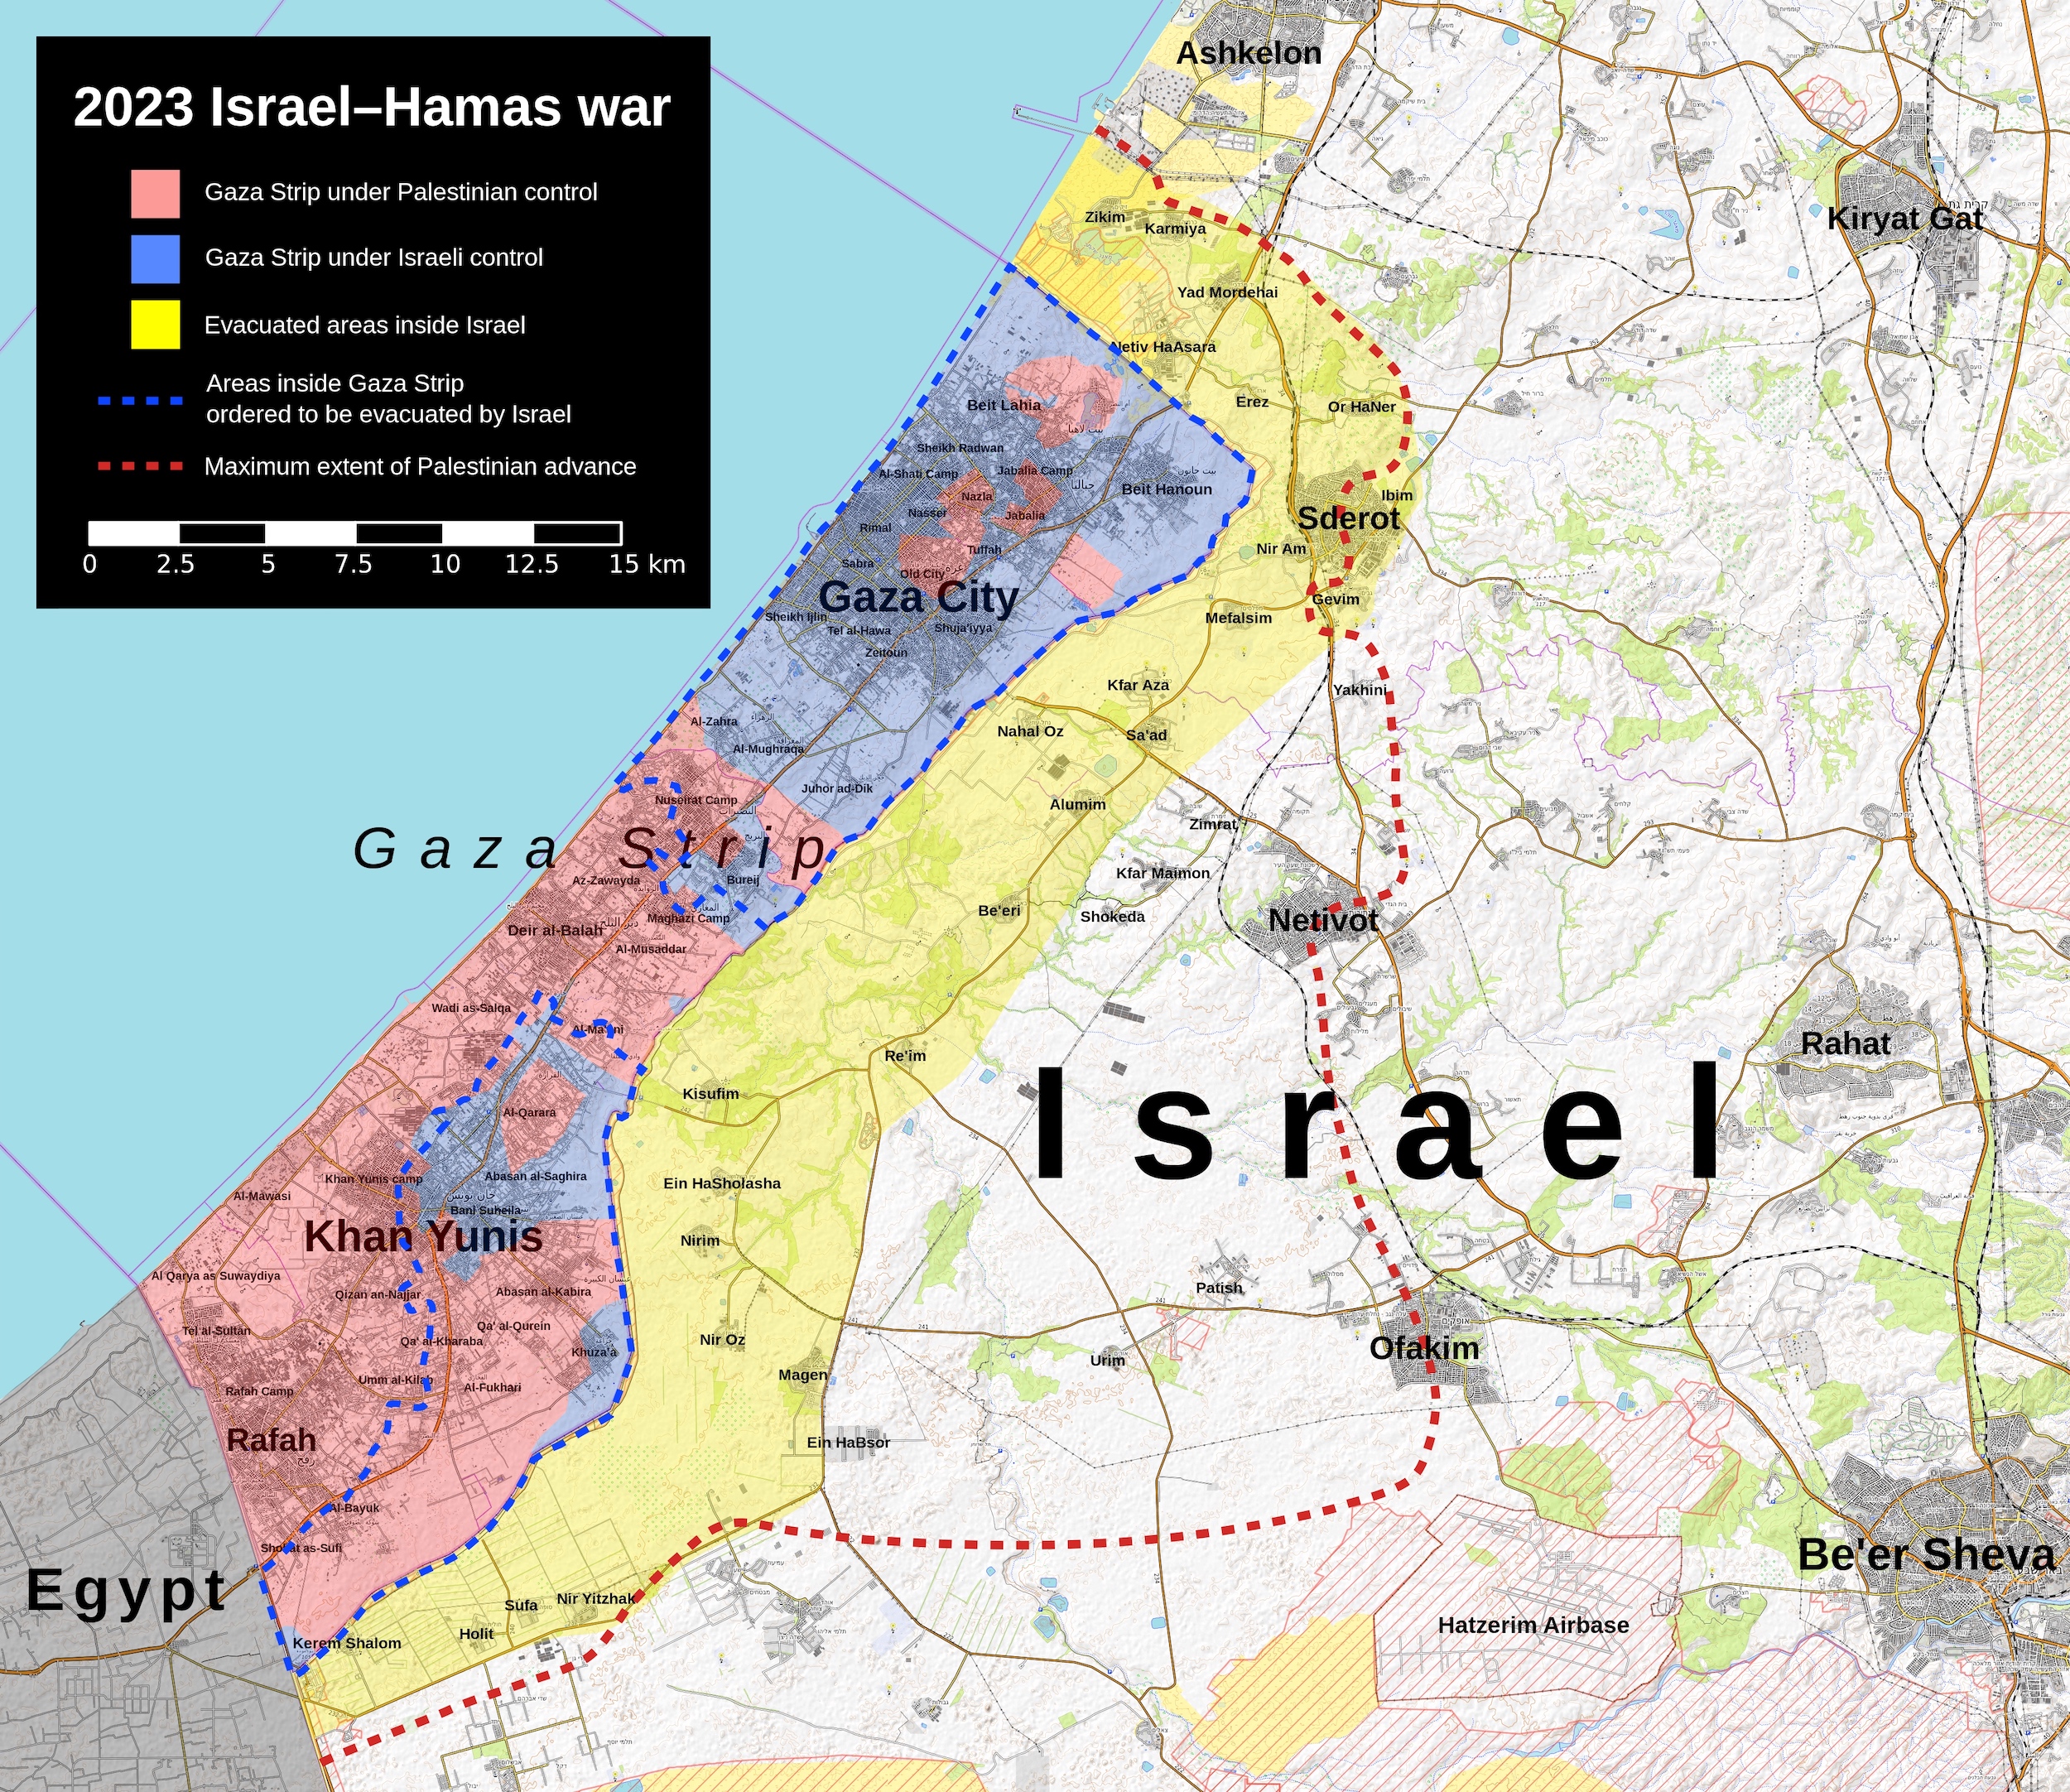 Carte de la guerre Israël-Hamas de 2023-2024. Situation début 2024